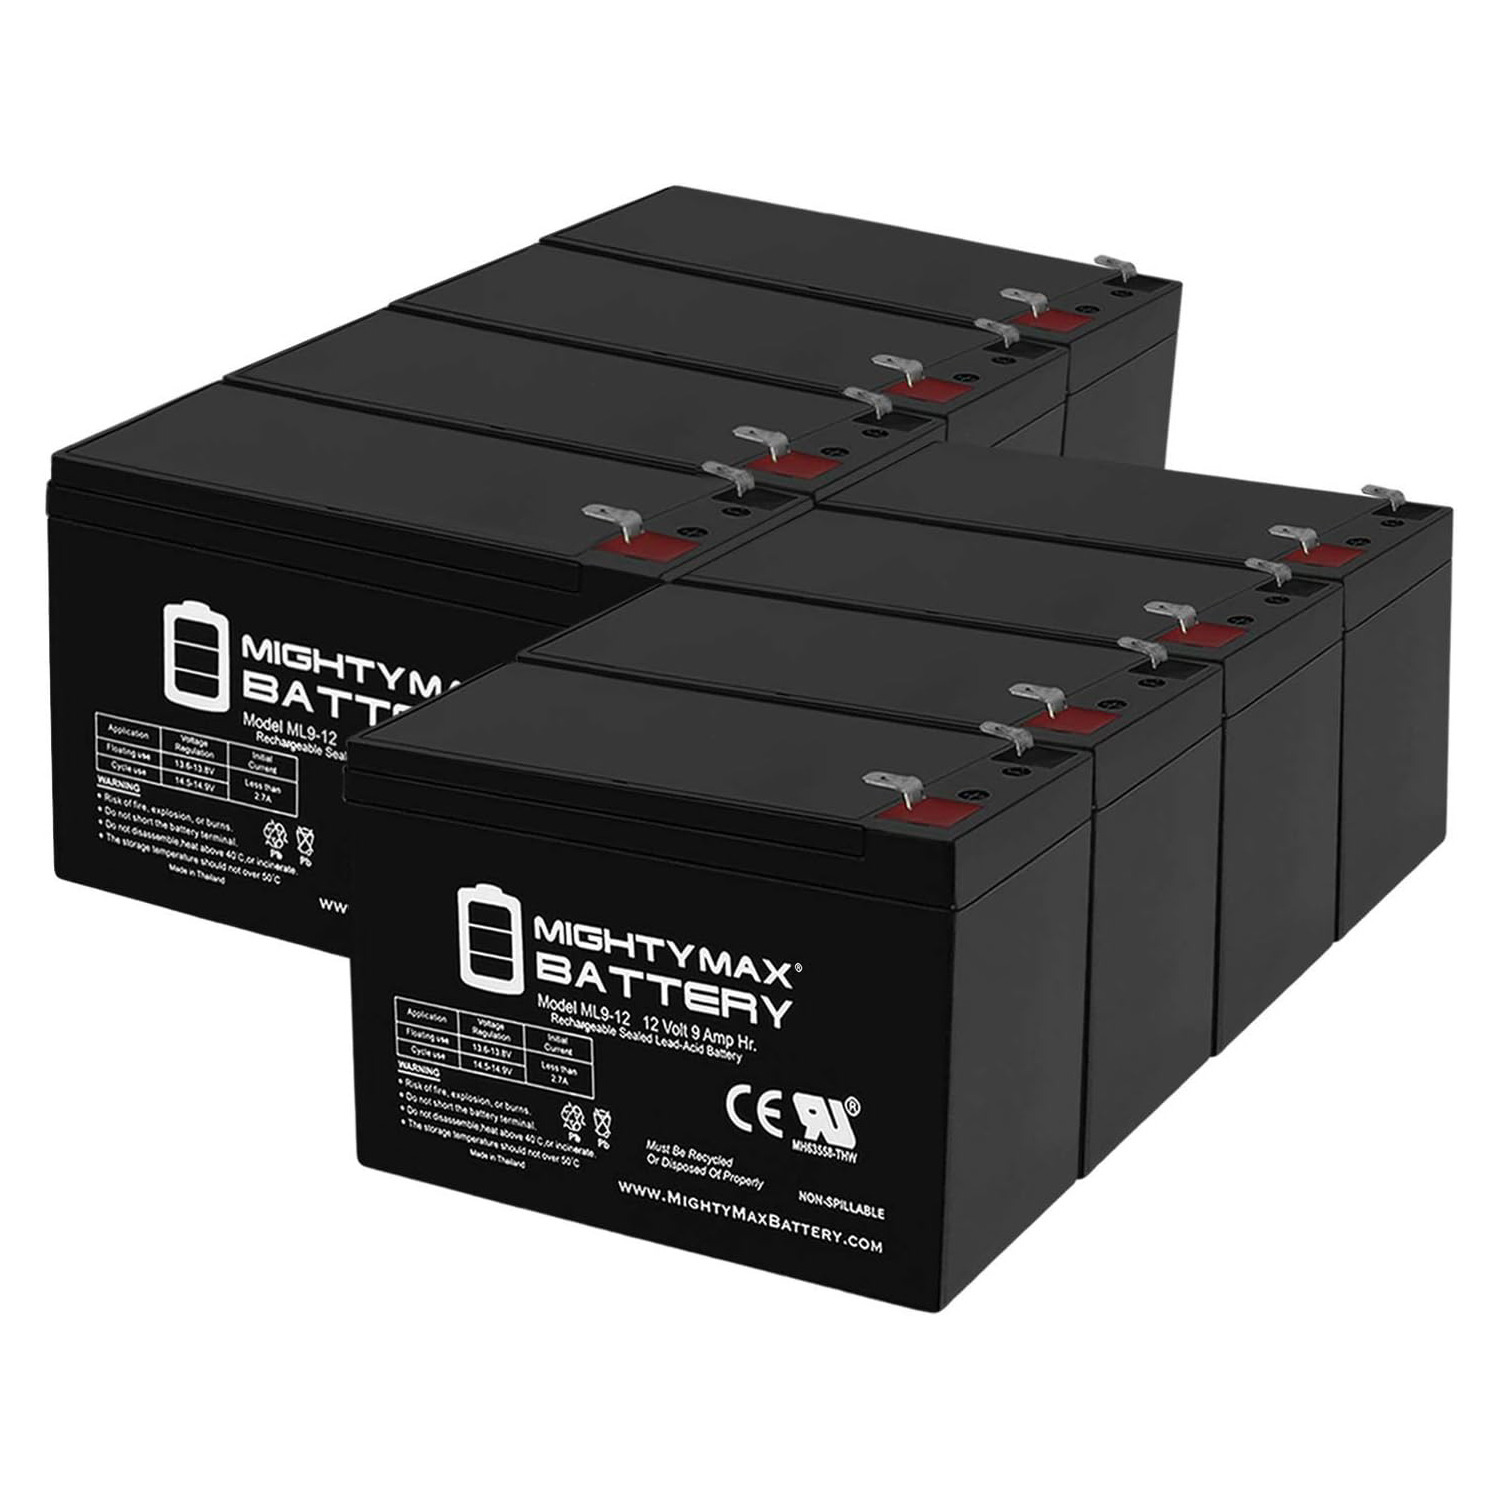 Altronix AL300ULM 12V, 9Ah Lead Acid Battery - 8 Pack